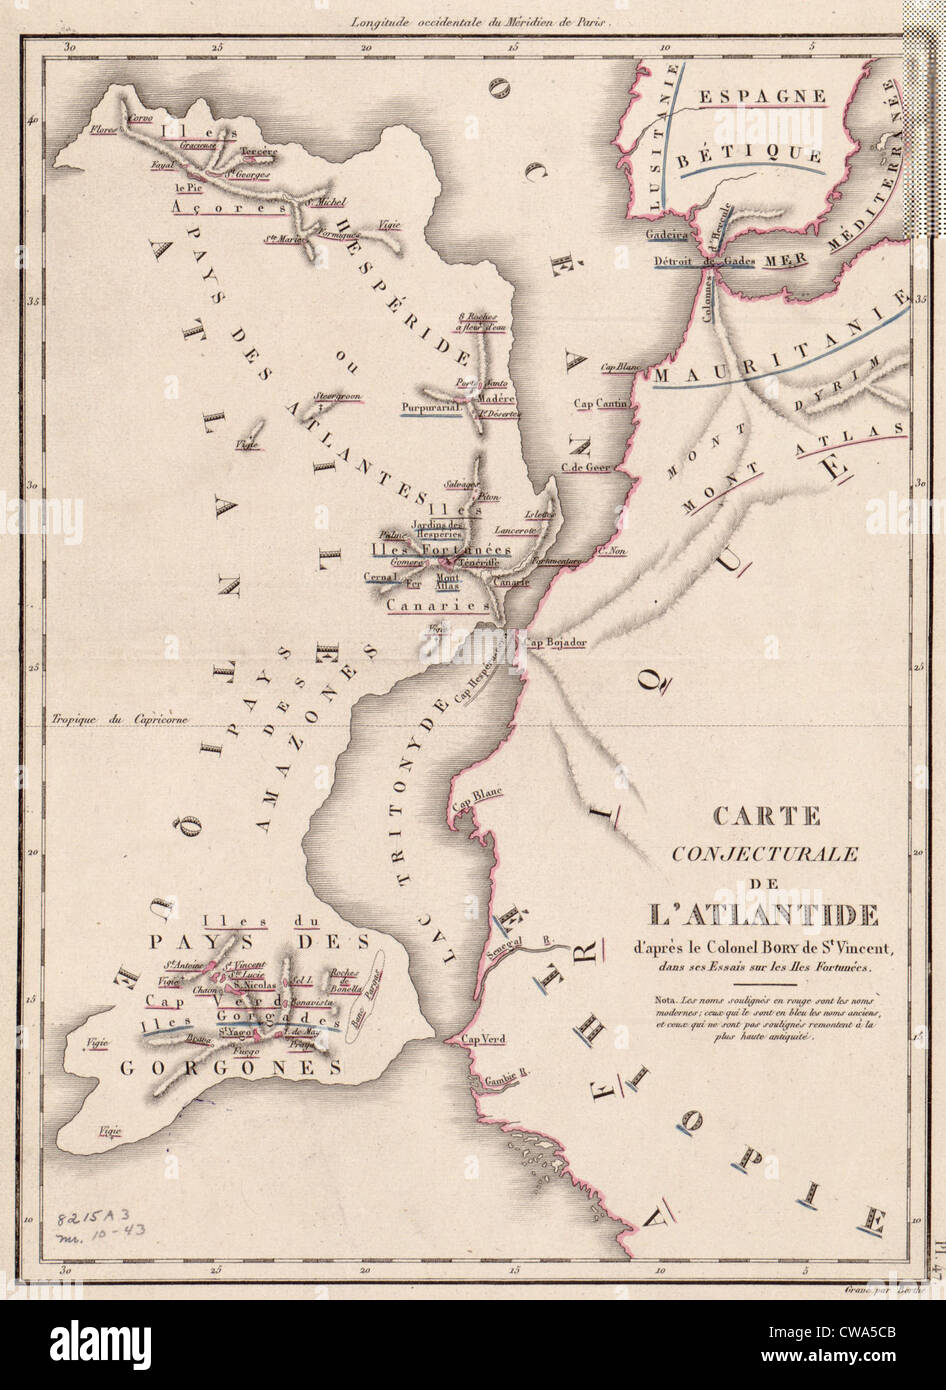 Mapa del siglo xix representando una conjeturó ubicación del continente de la Atlántida imaginaria de la costa del norte de África. Foto de stock